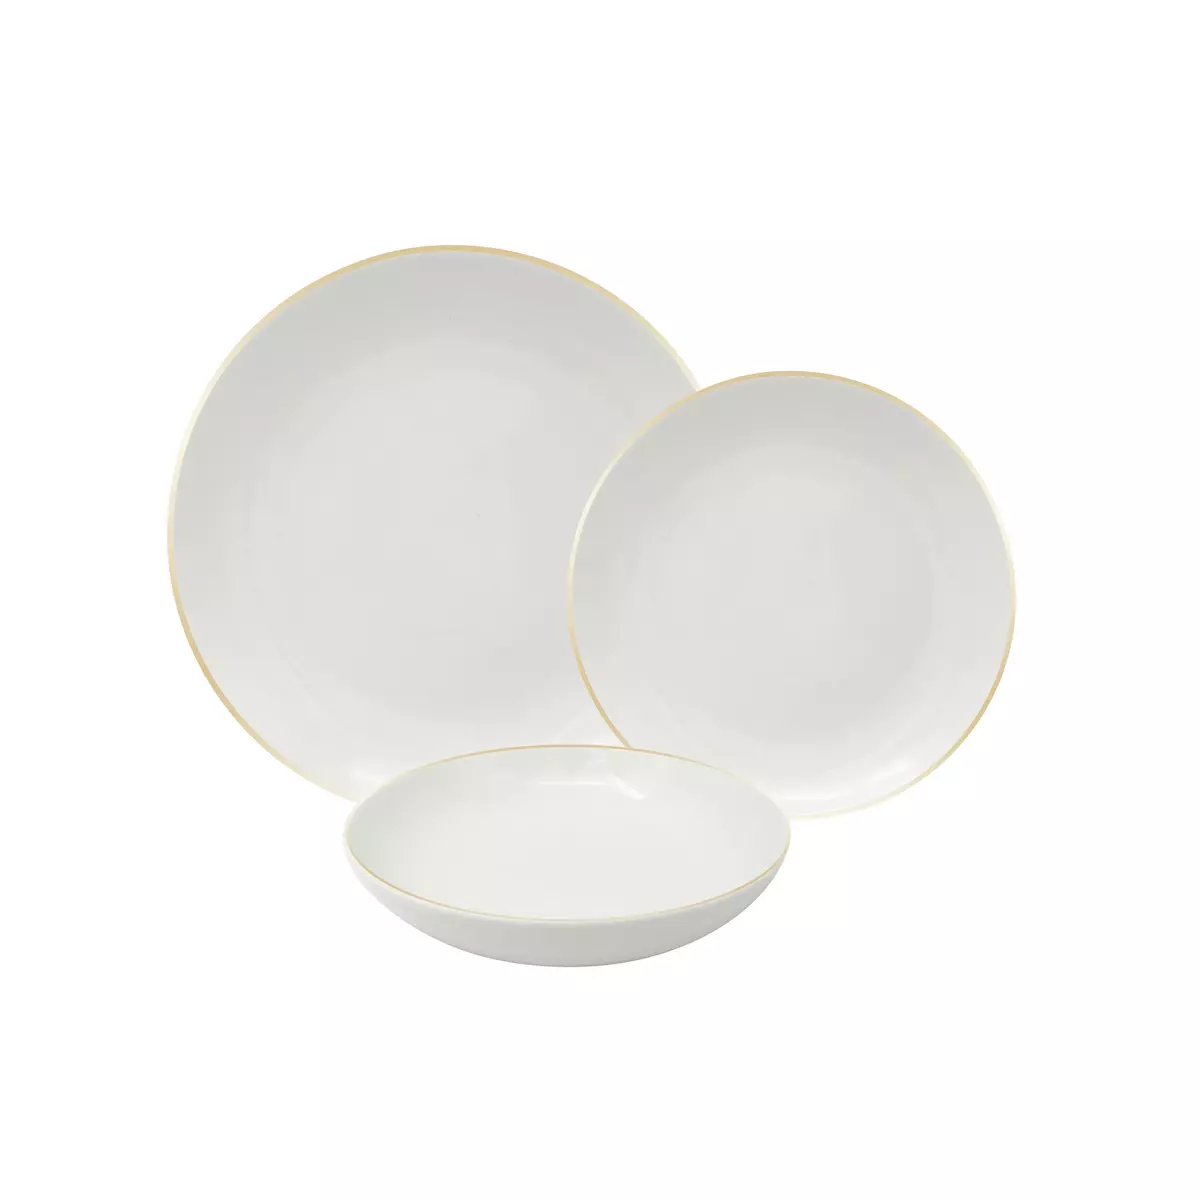 Service d'assiettes porcelaine 18 pièces blanc filet or pas cher 